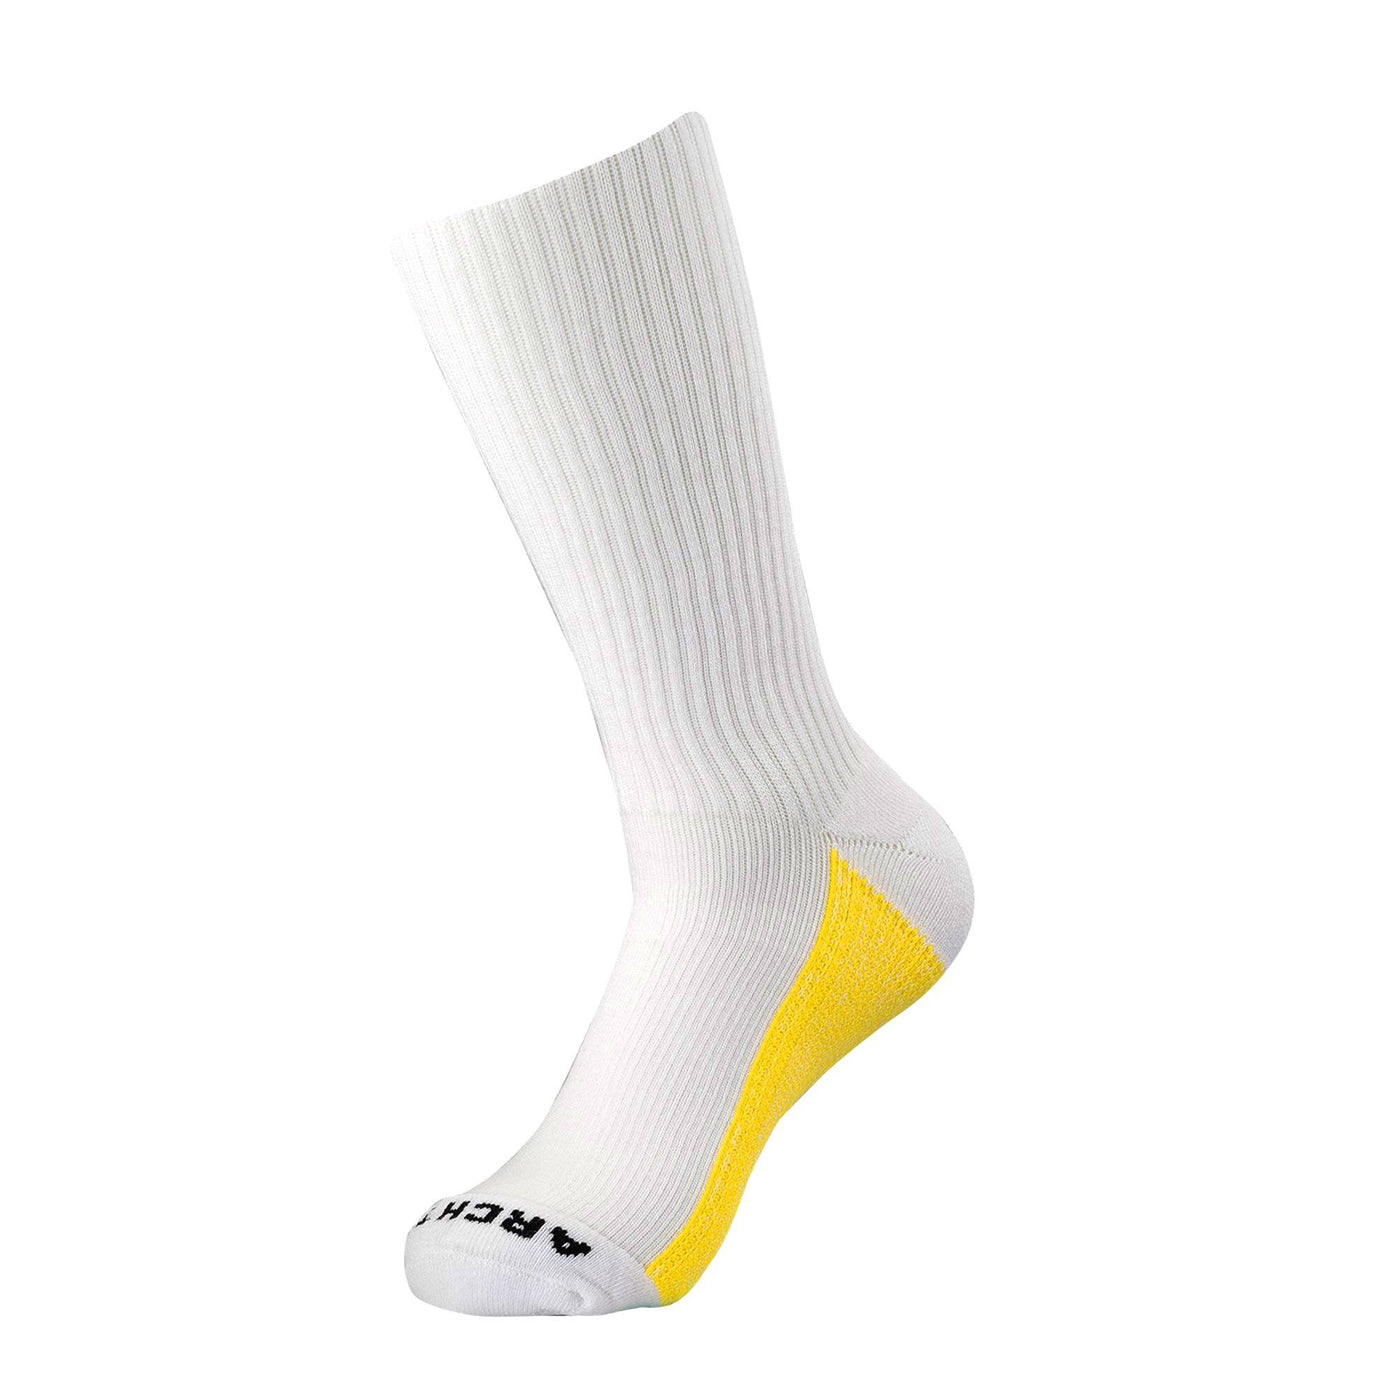 White Athletic Crew Sock athletic socks ArchTek Women's Medium (sizes 8-10.5) White